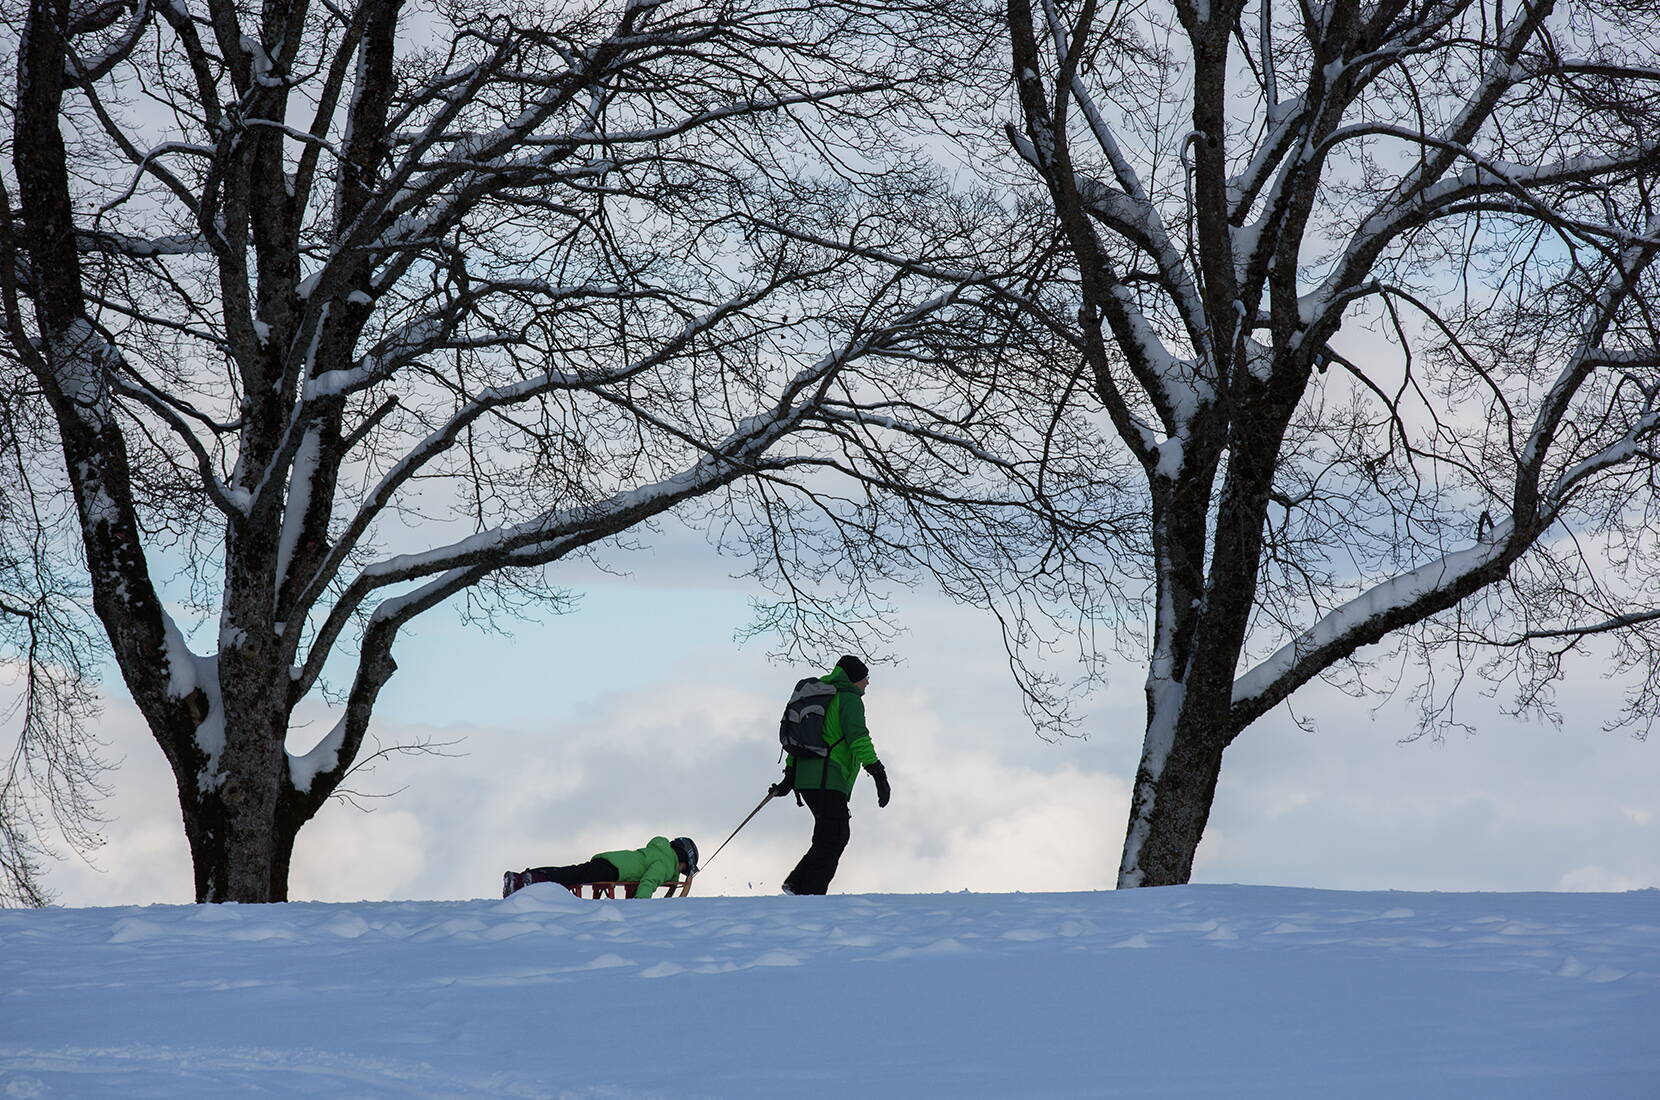 Familienausflug Bern: Auf dem Berner Hausberg, dem Gurten, kann bei genügend Schnee geschlittelt werden.